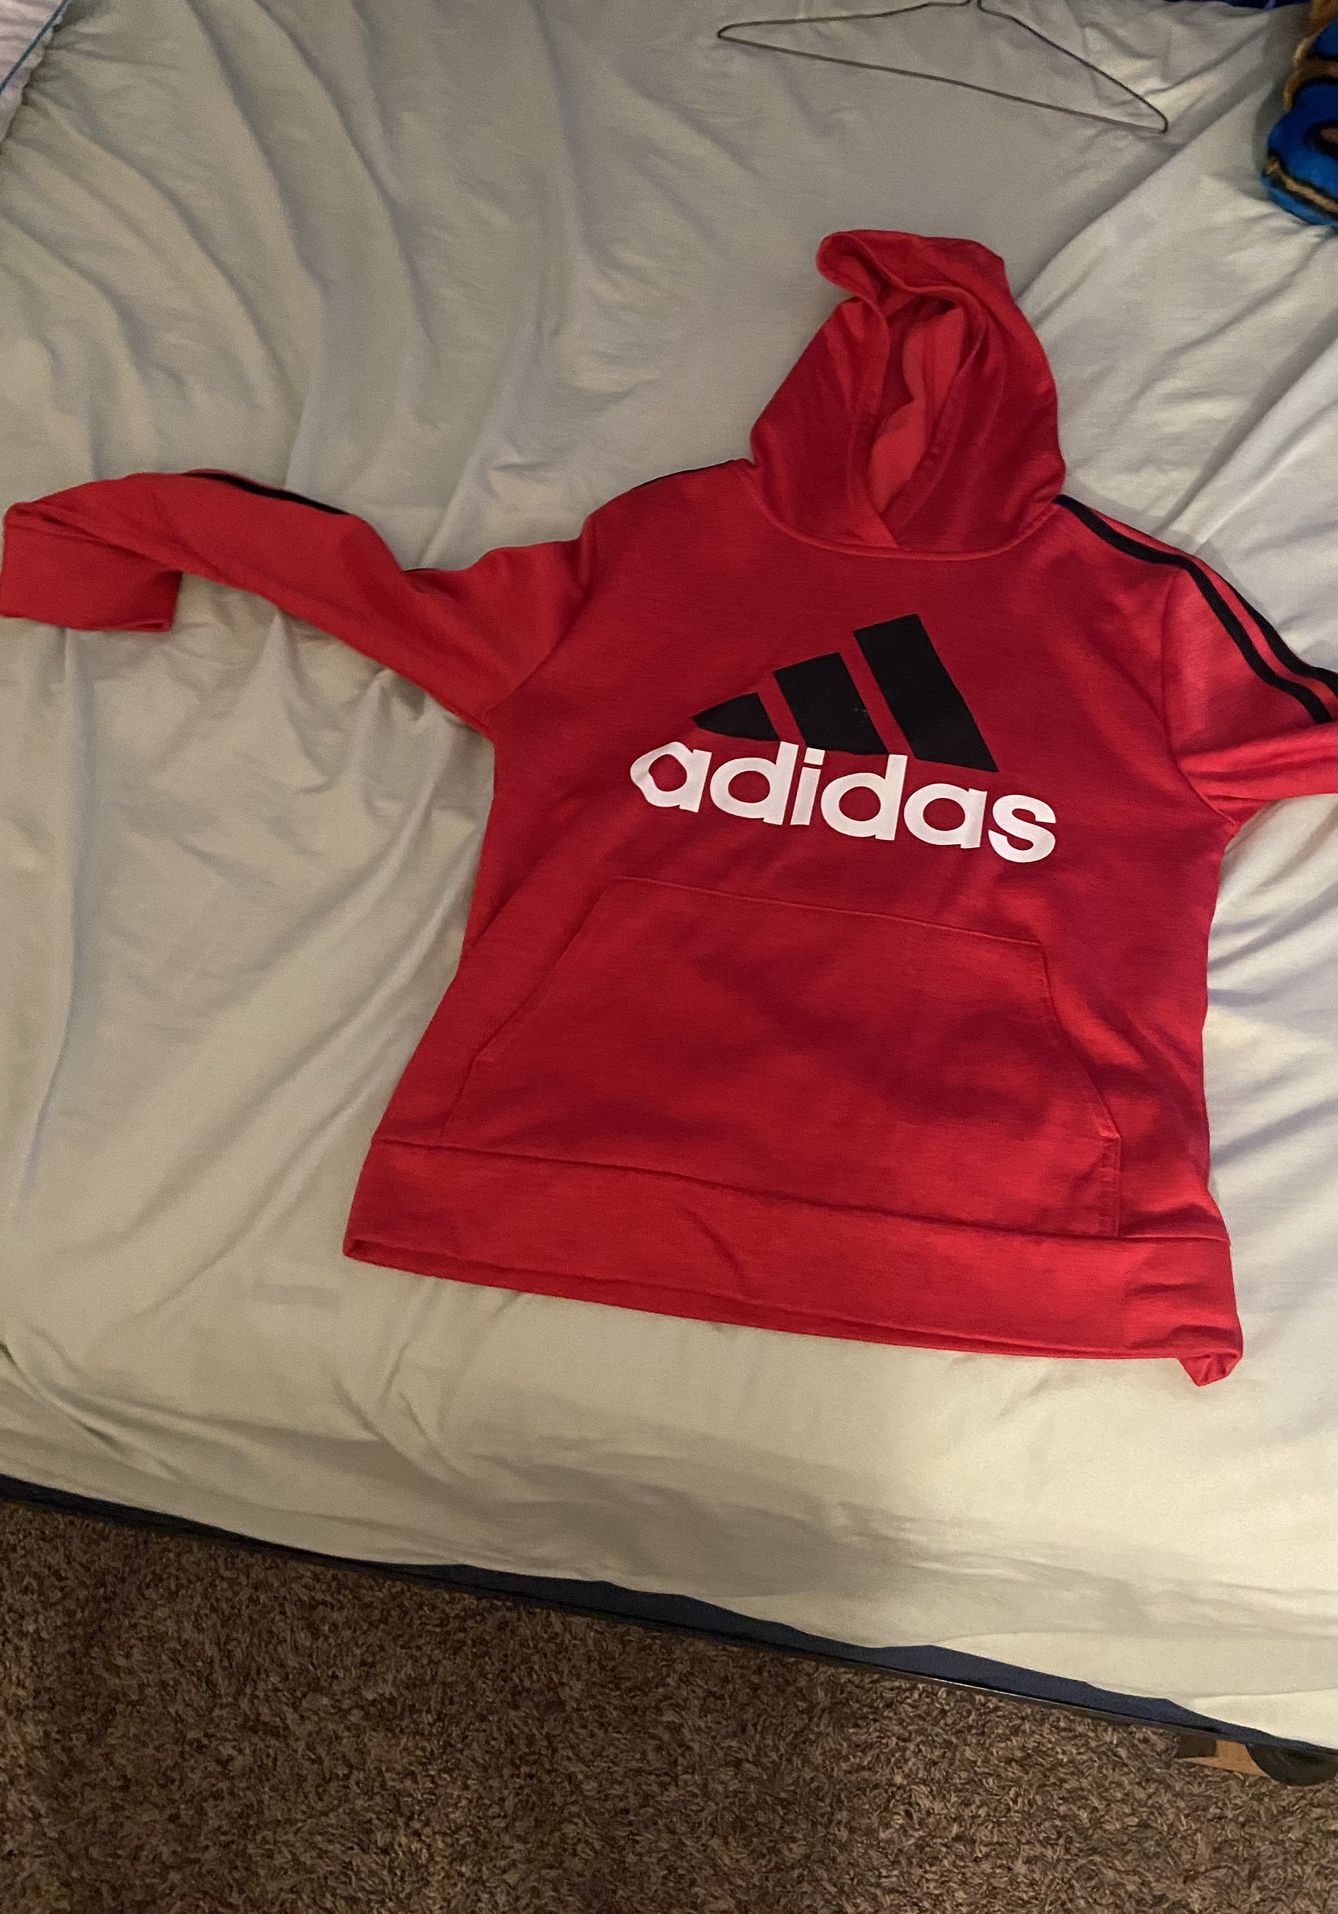 LG 14/16 - Red Adidas Hoodie